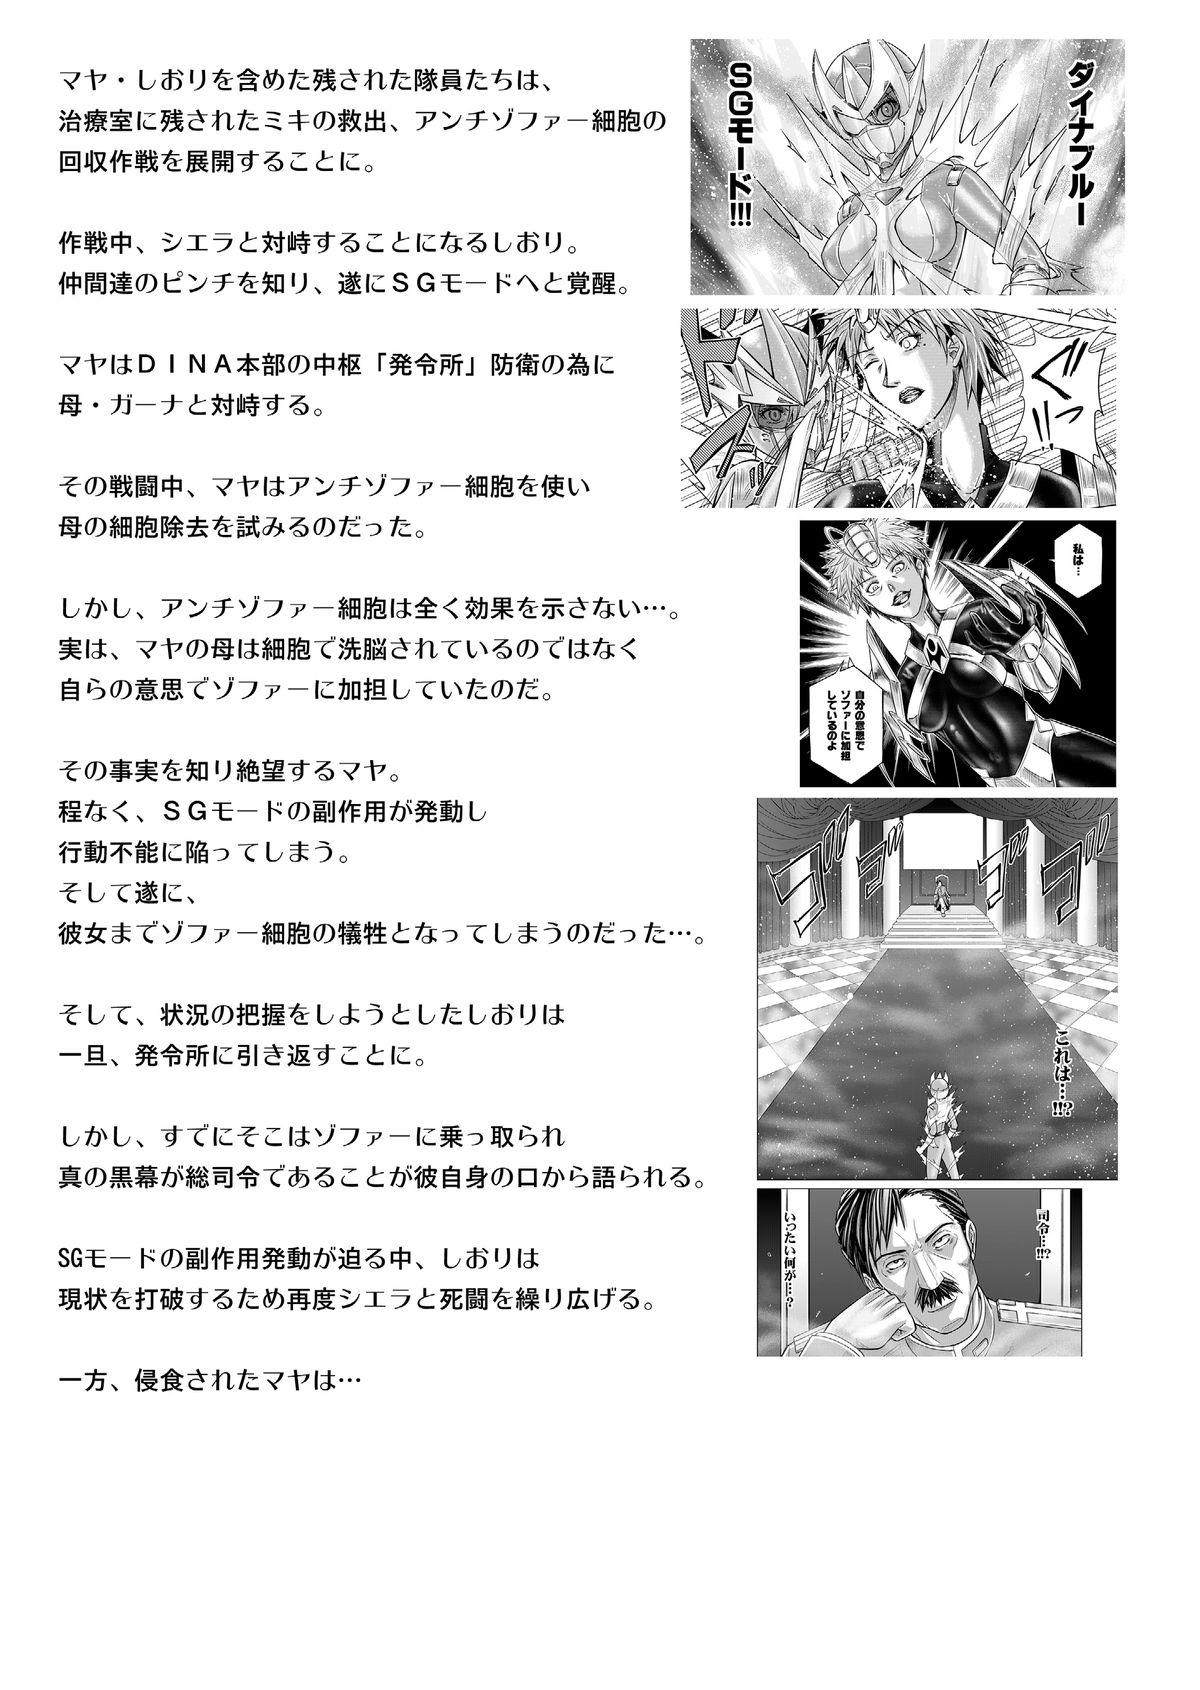 Tokubousentai Dinaranger Vol.17/18 4